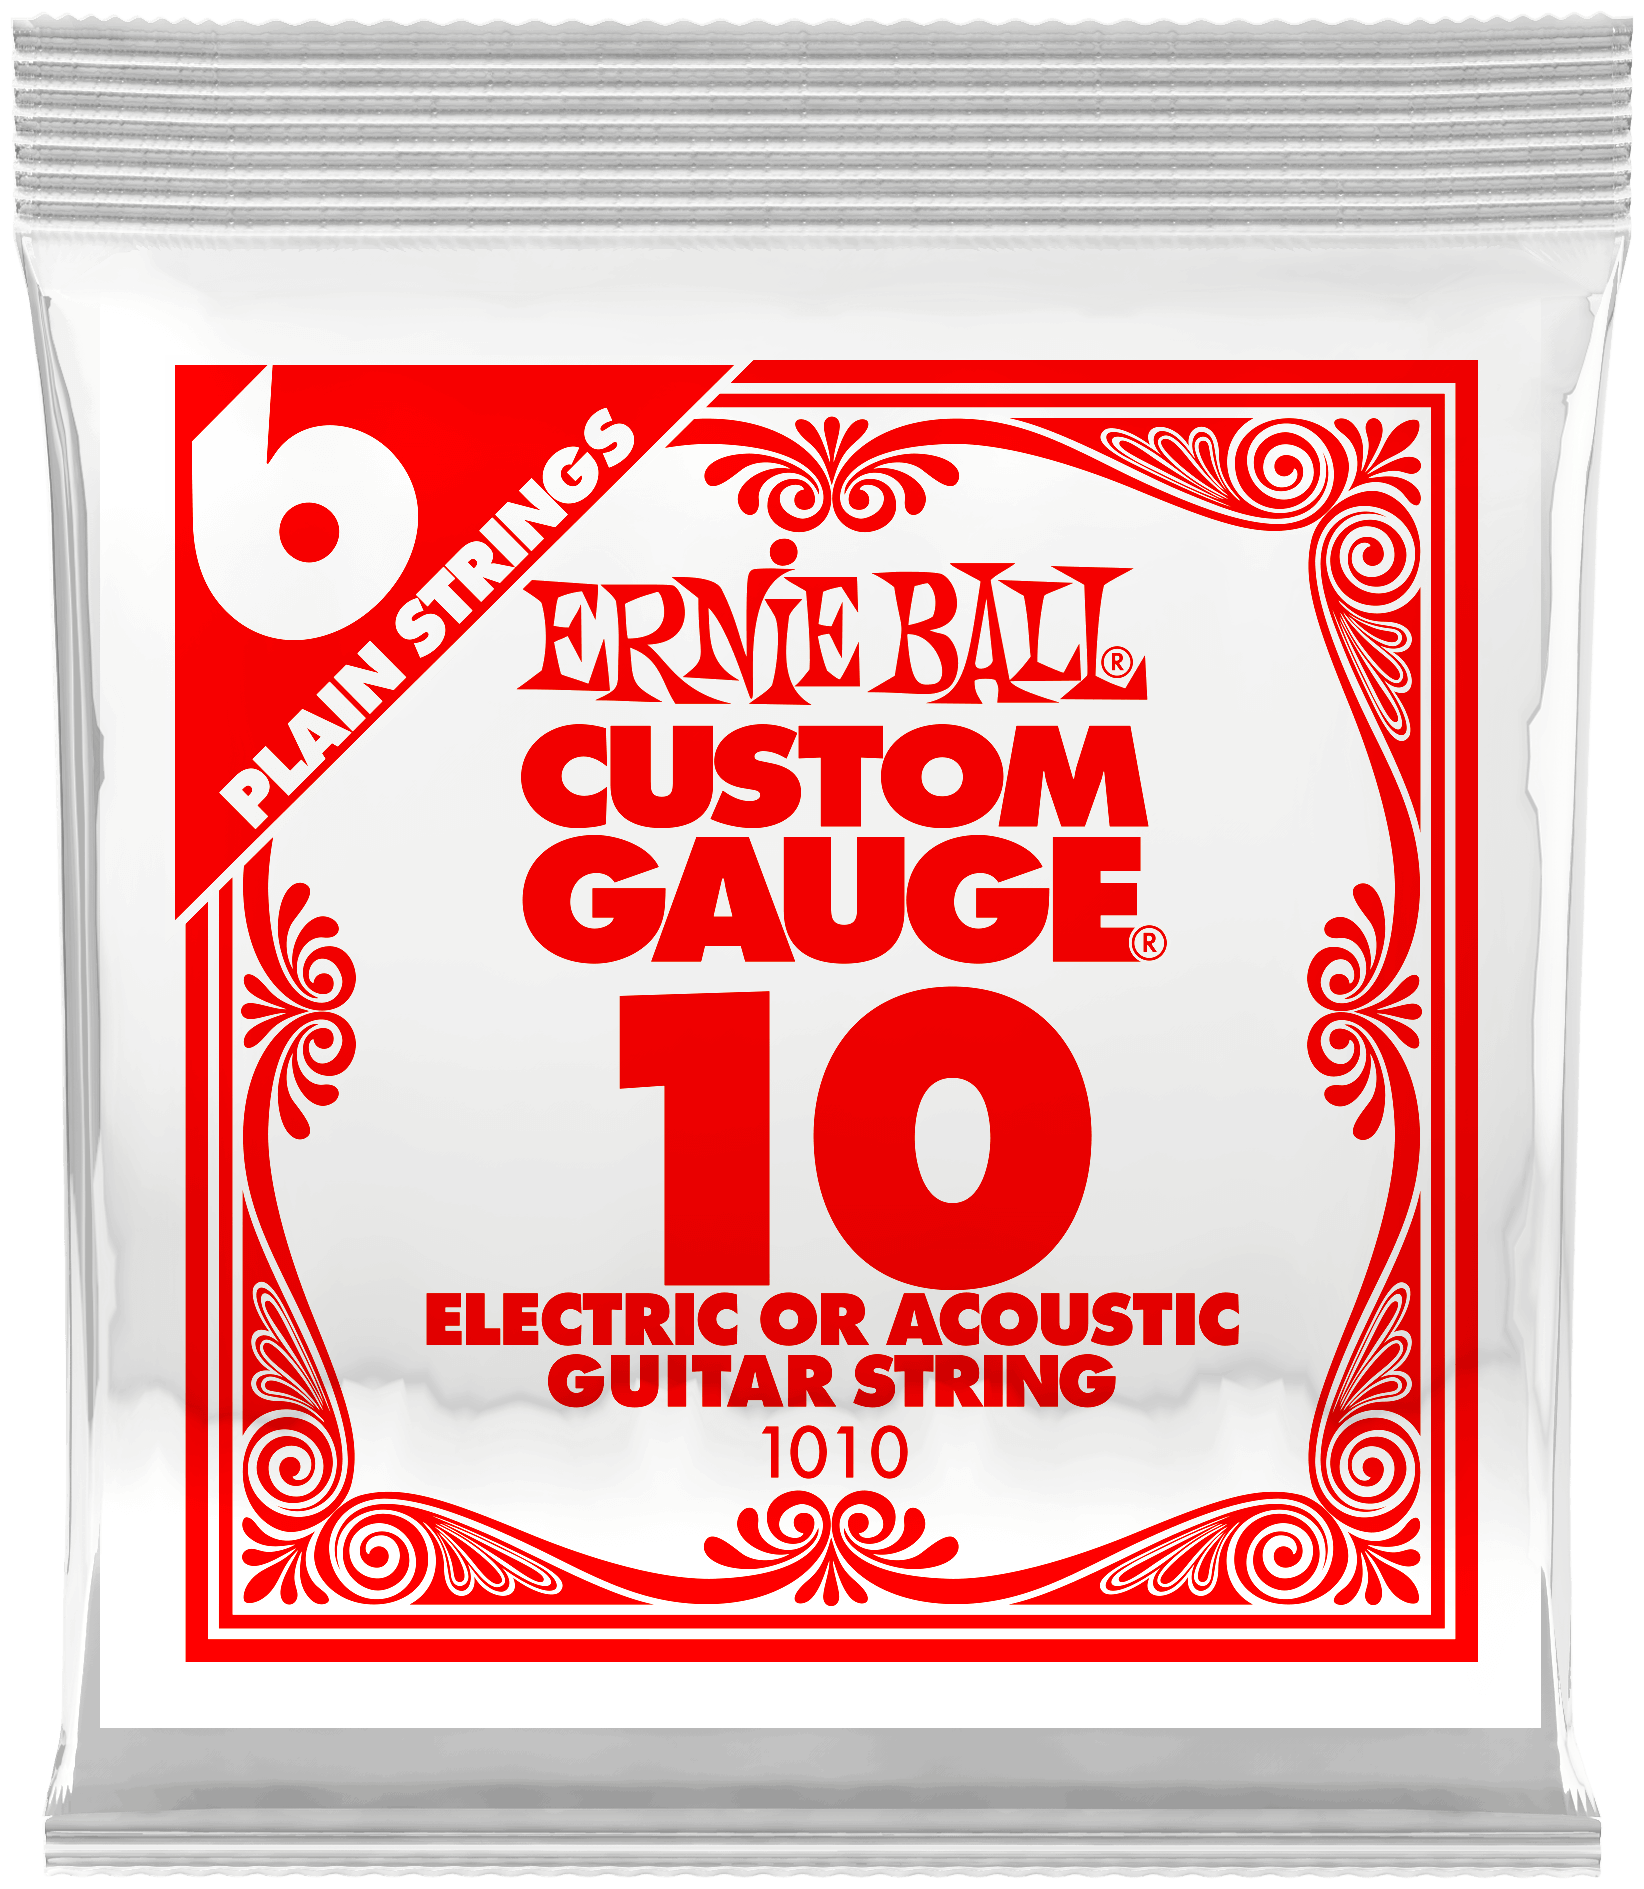 Первая струна для акустической и электро гитары 10 Ernie Ball 1010